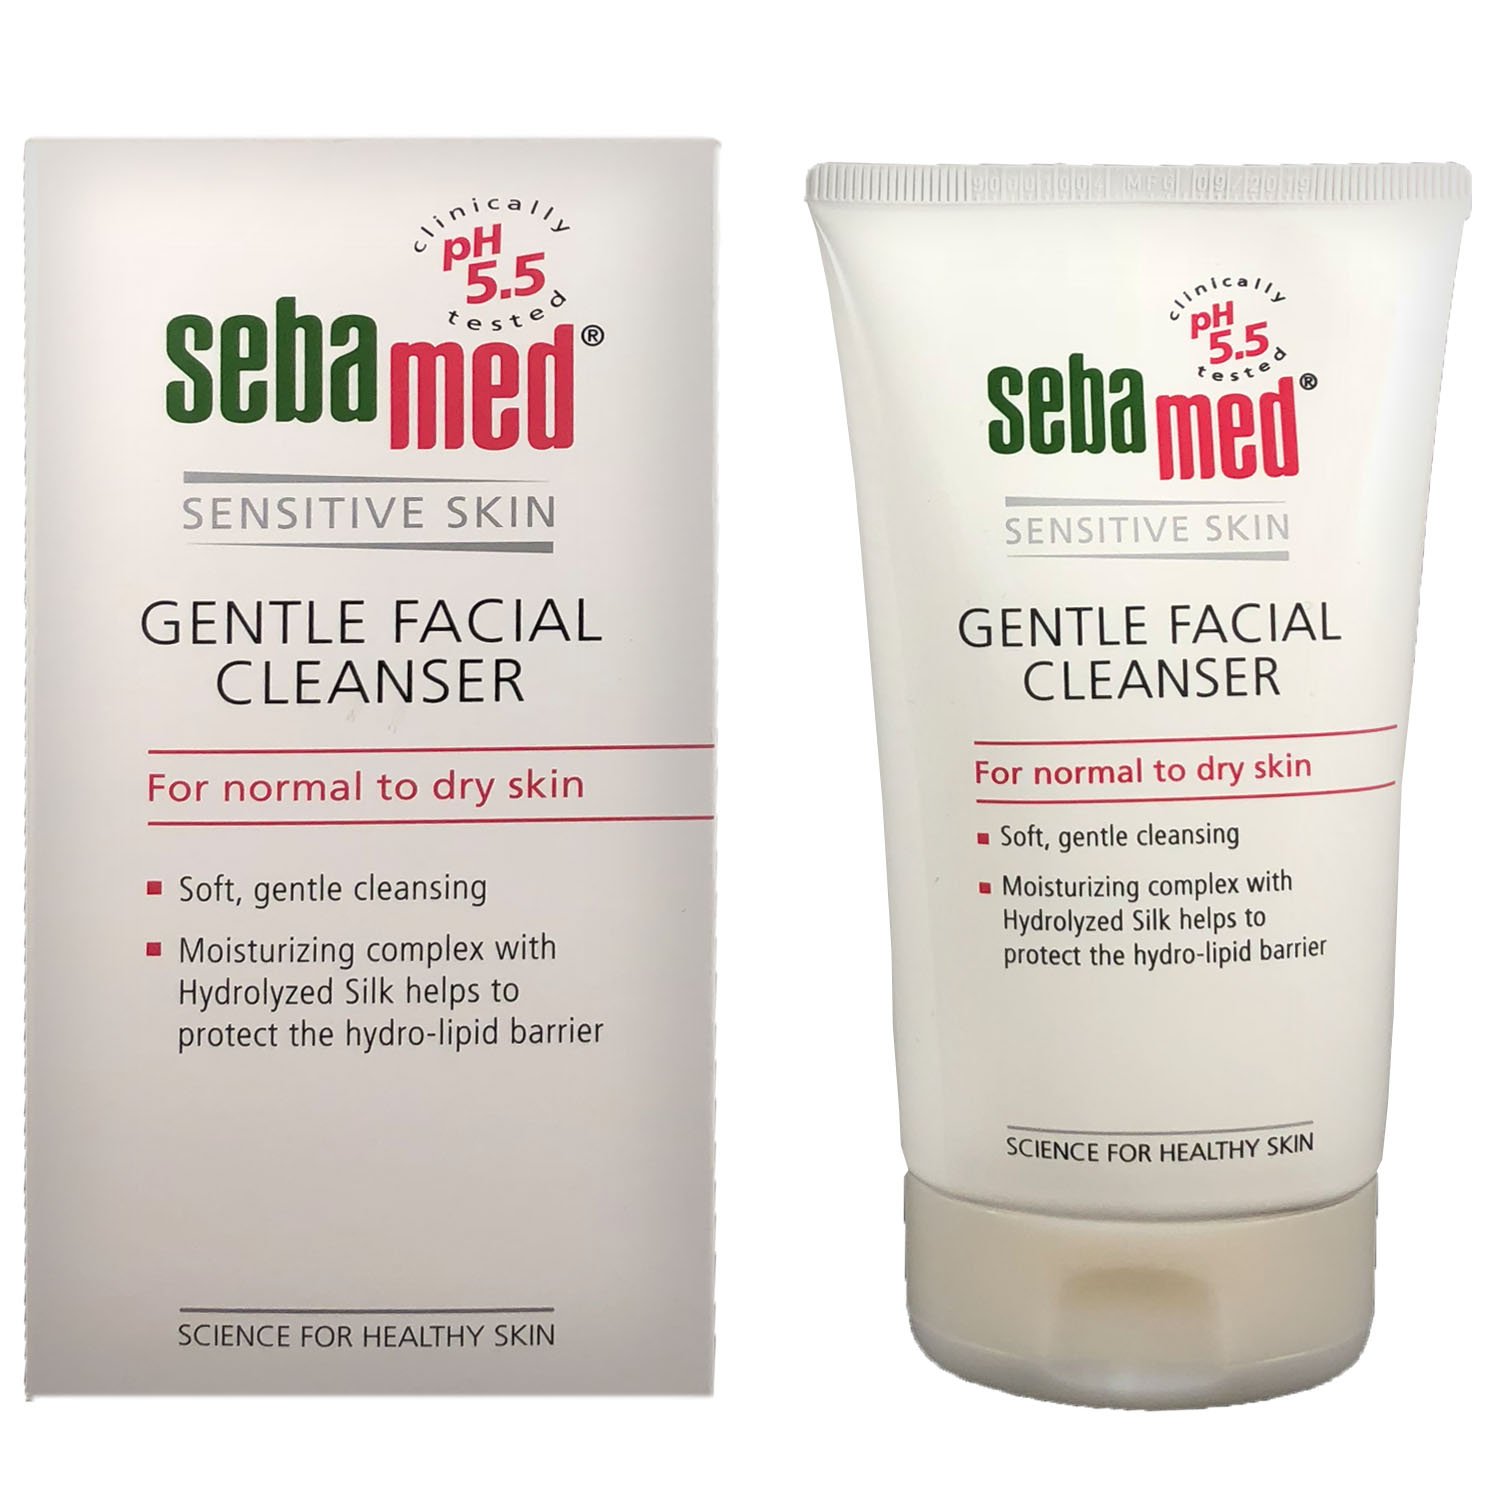 Жидкое средство Sebamed Sensitive Skin для очищения нормальной и сухой кожи лица, 150 мл - фото 3